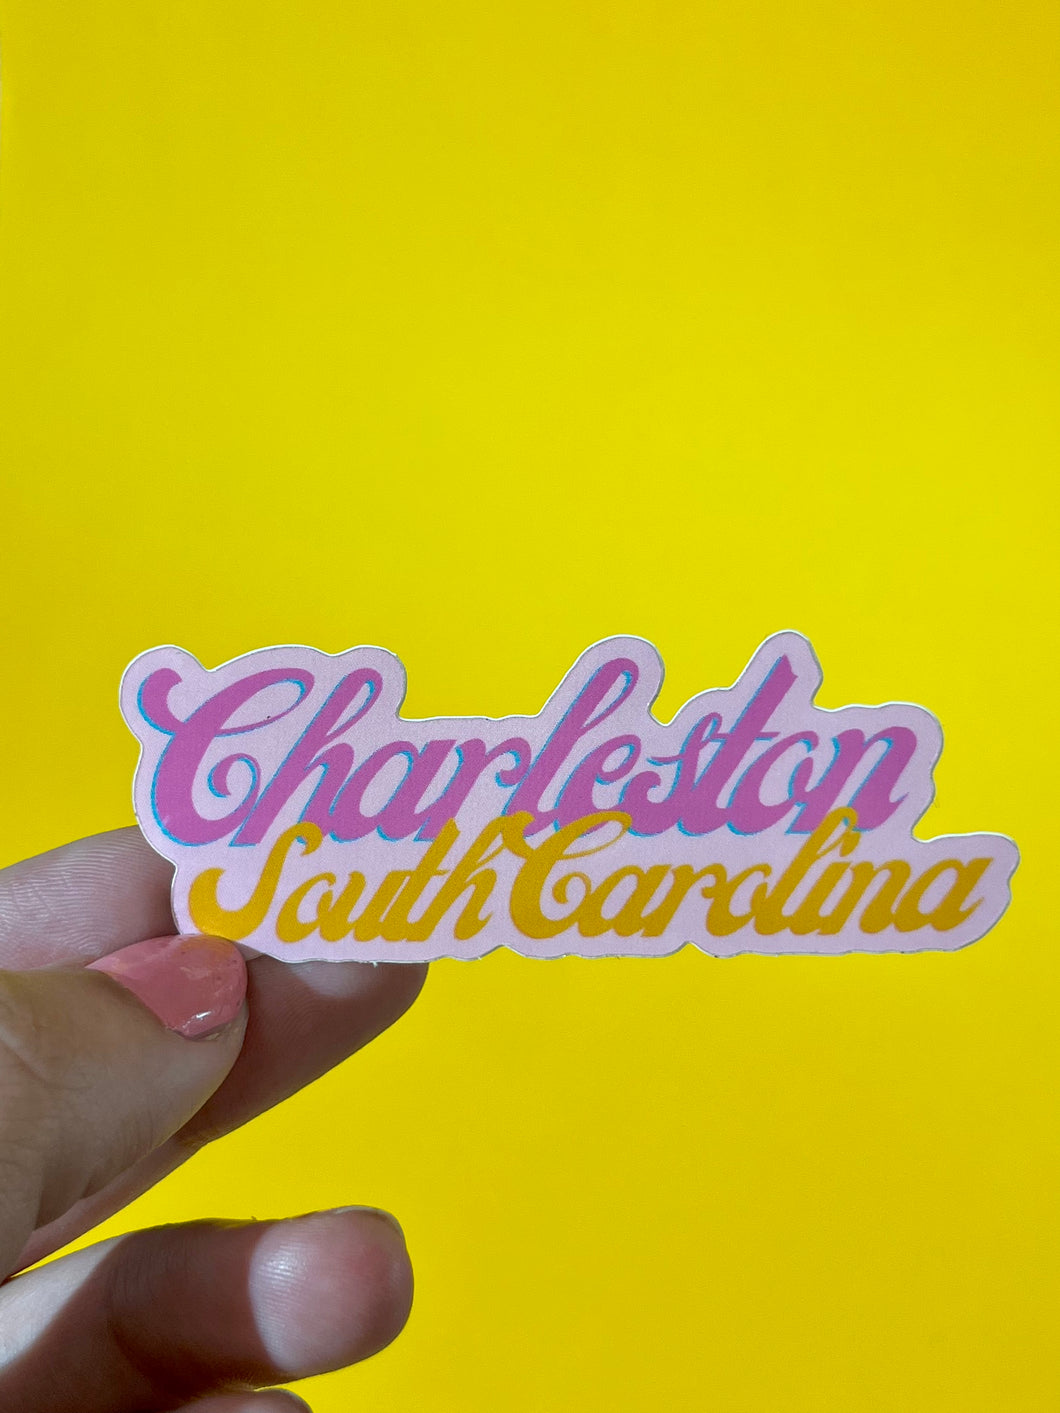 Charleston Sticker